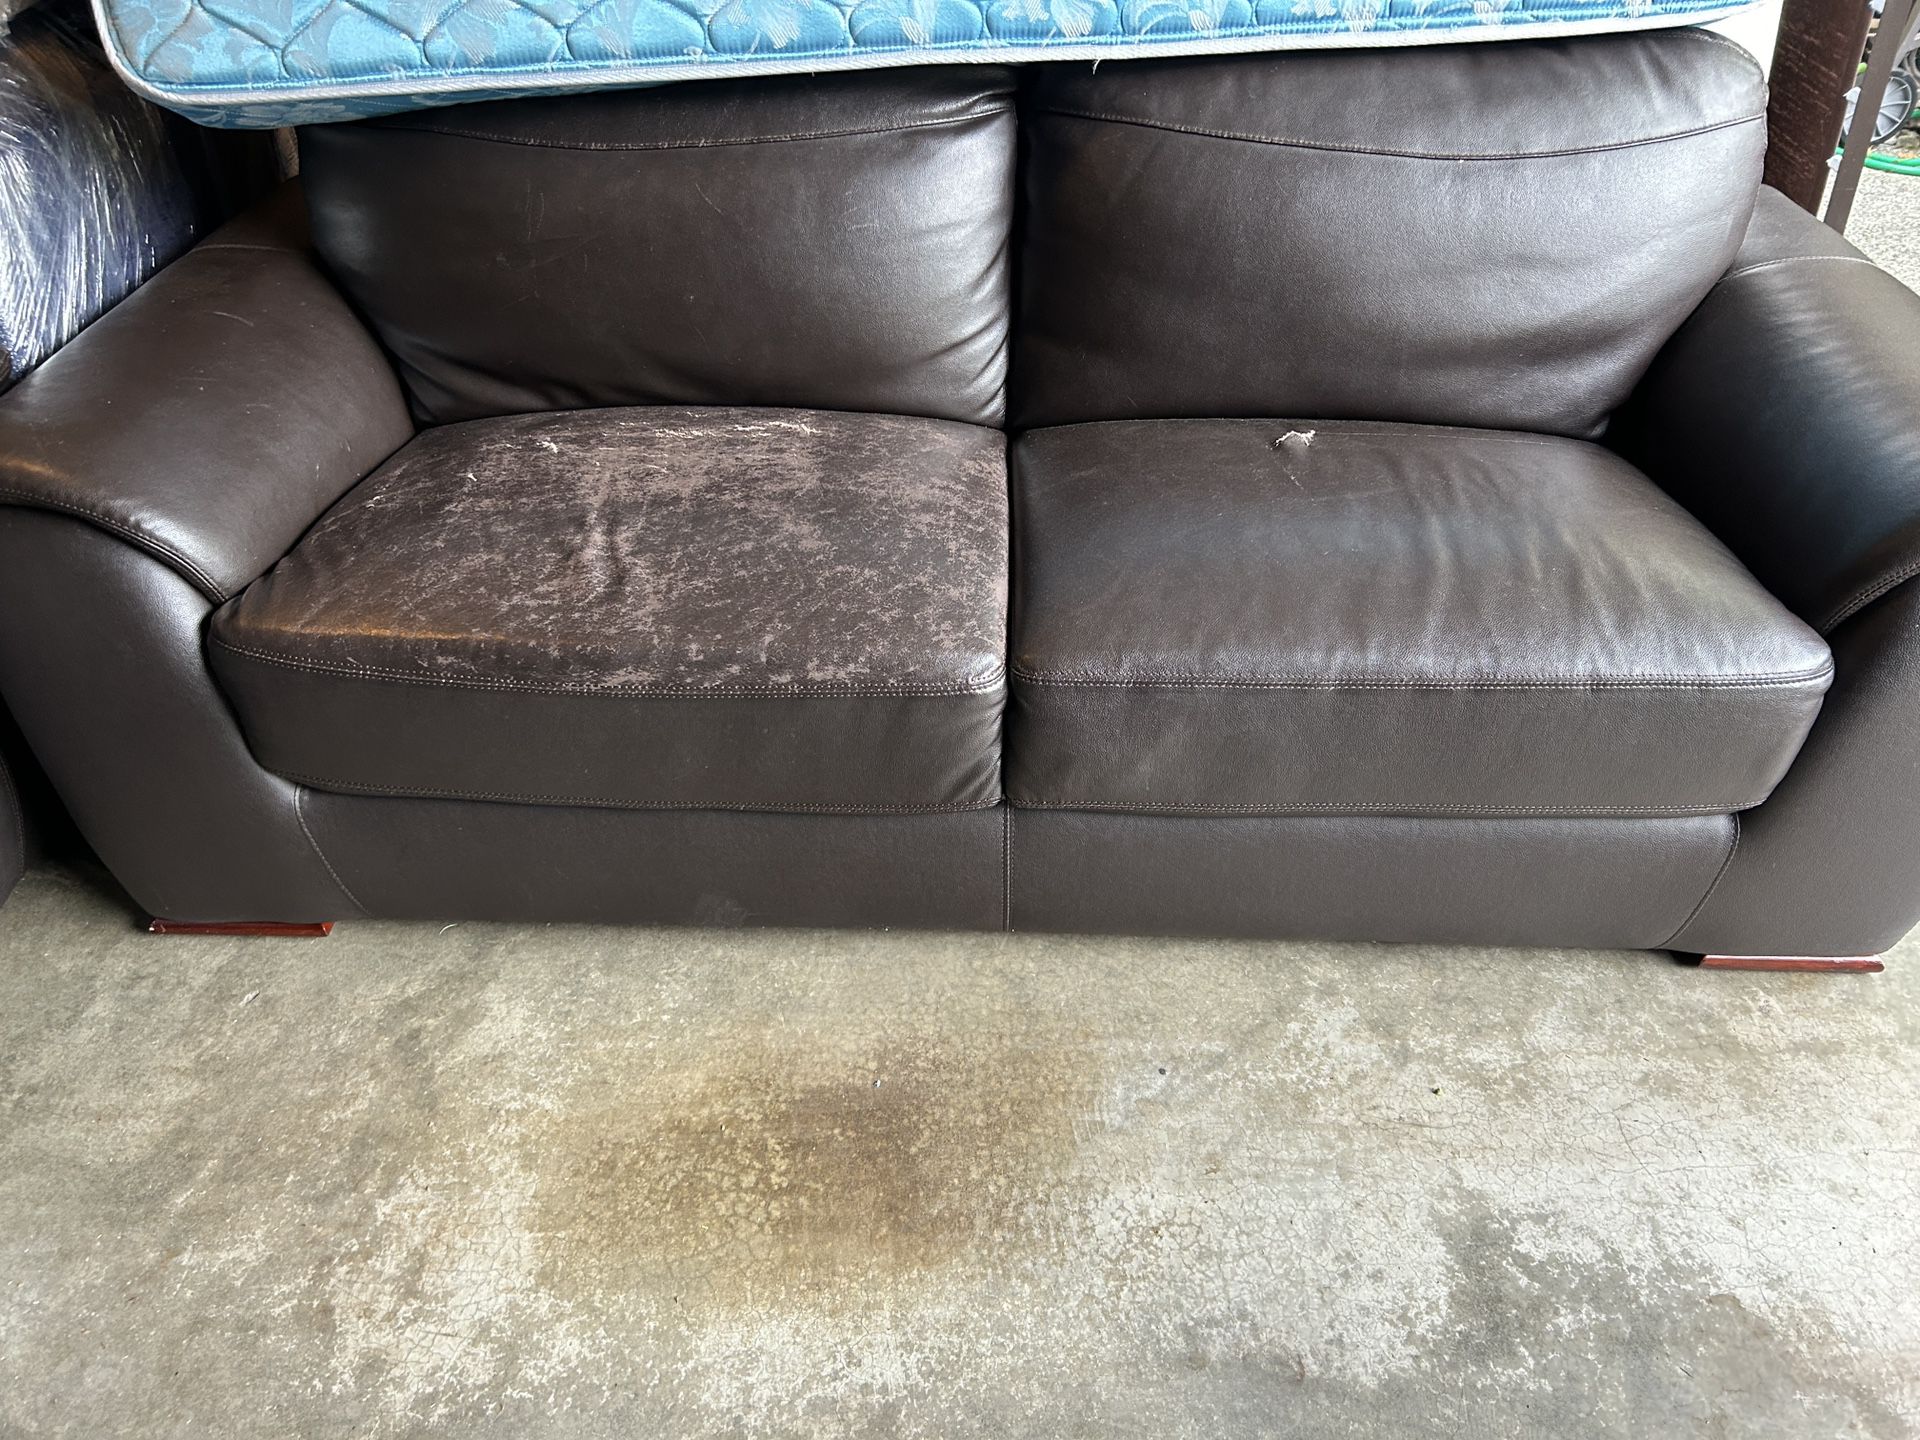 2 Free Leather Sofa